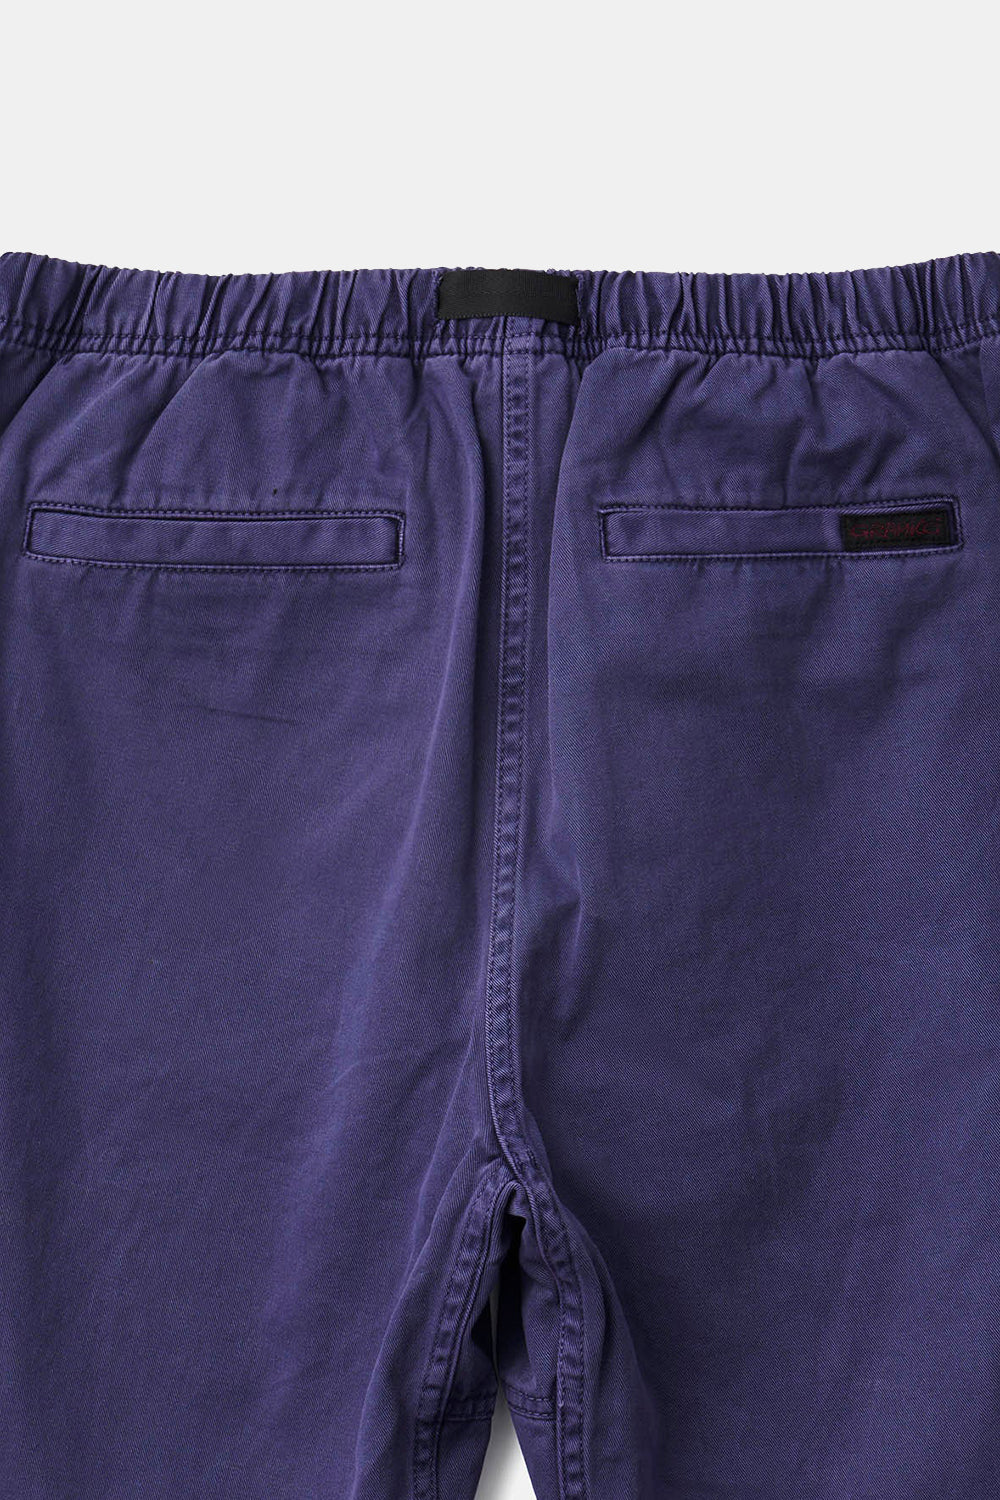 Gramicci G-Shorts Pigmentfarvet bomuldstwill (grå lilla)